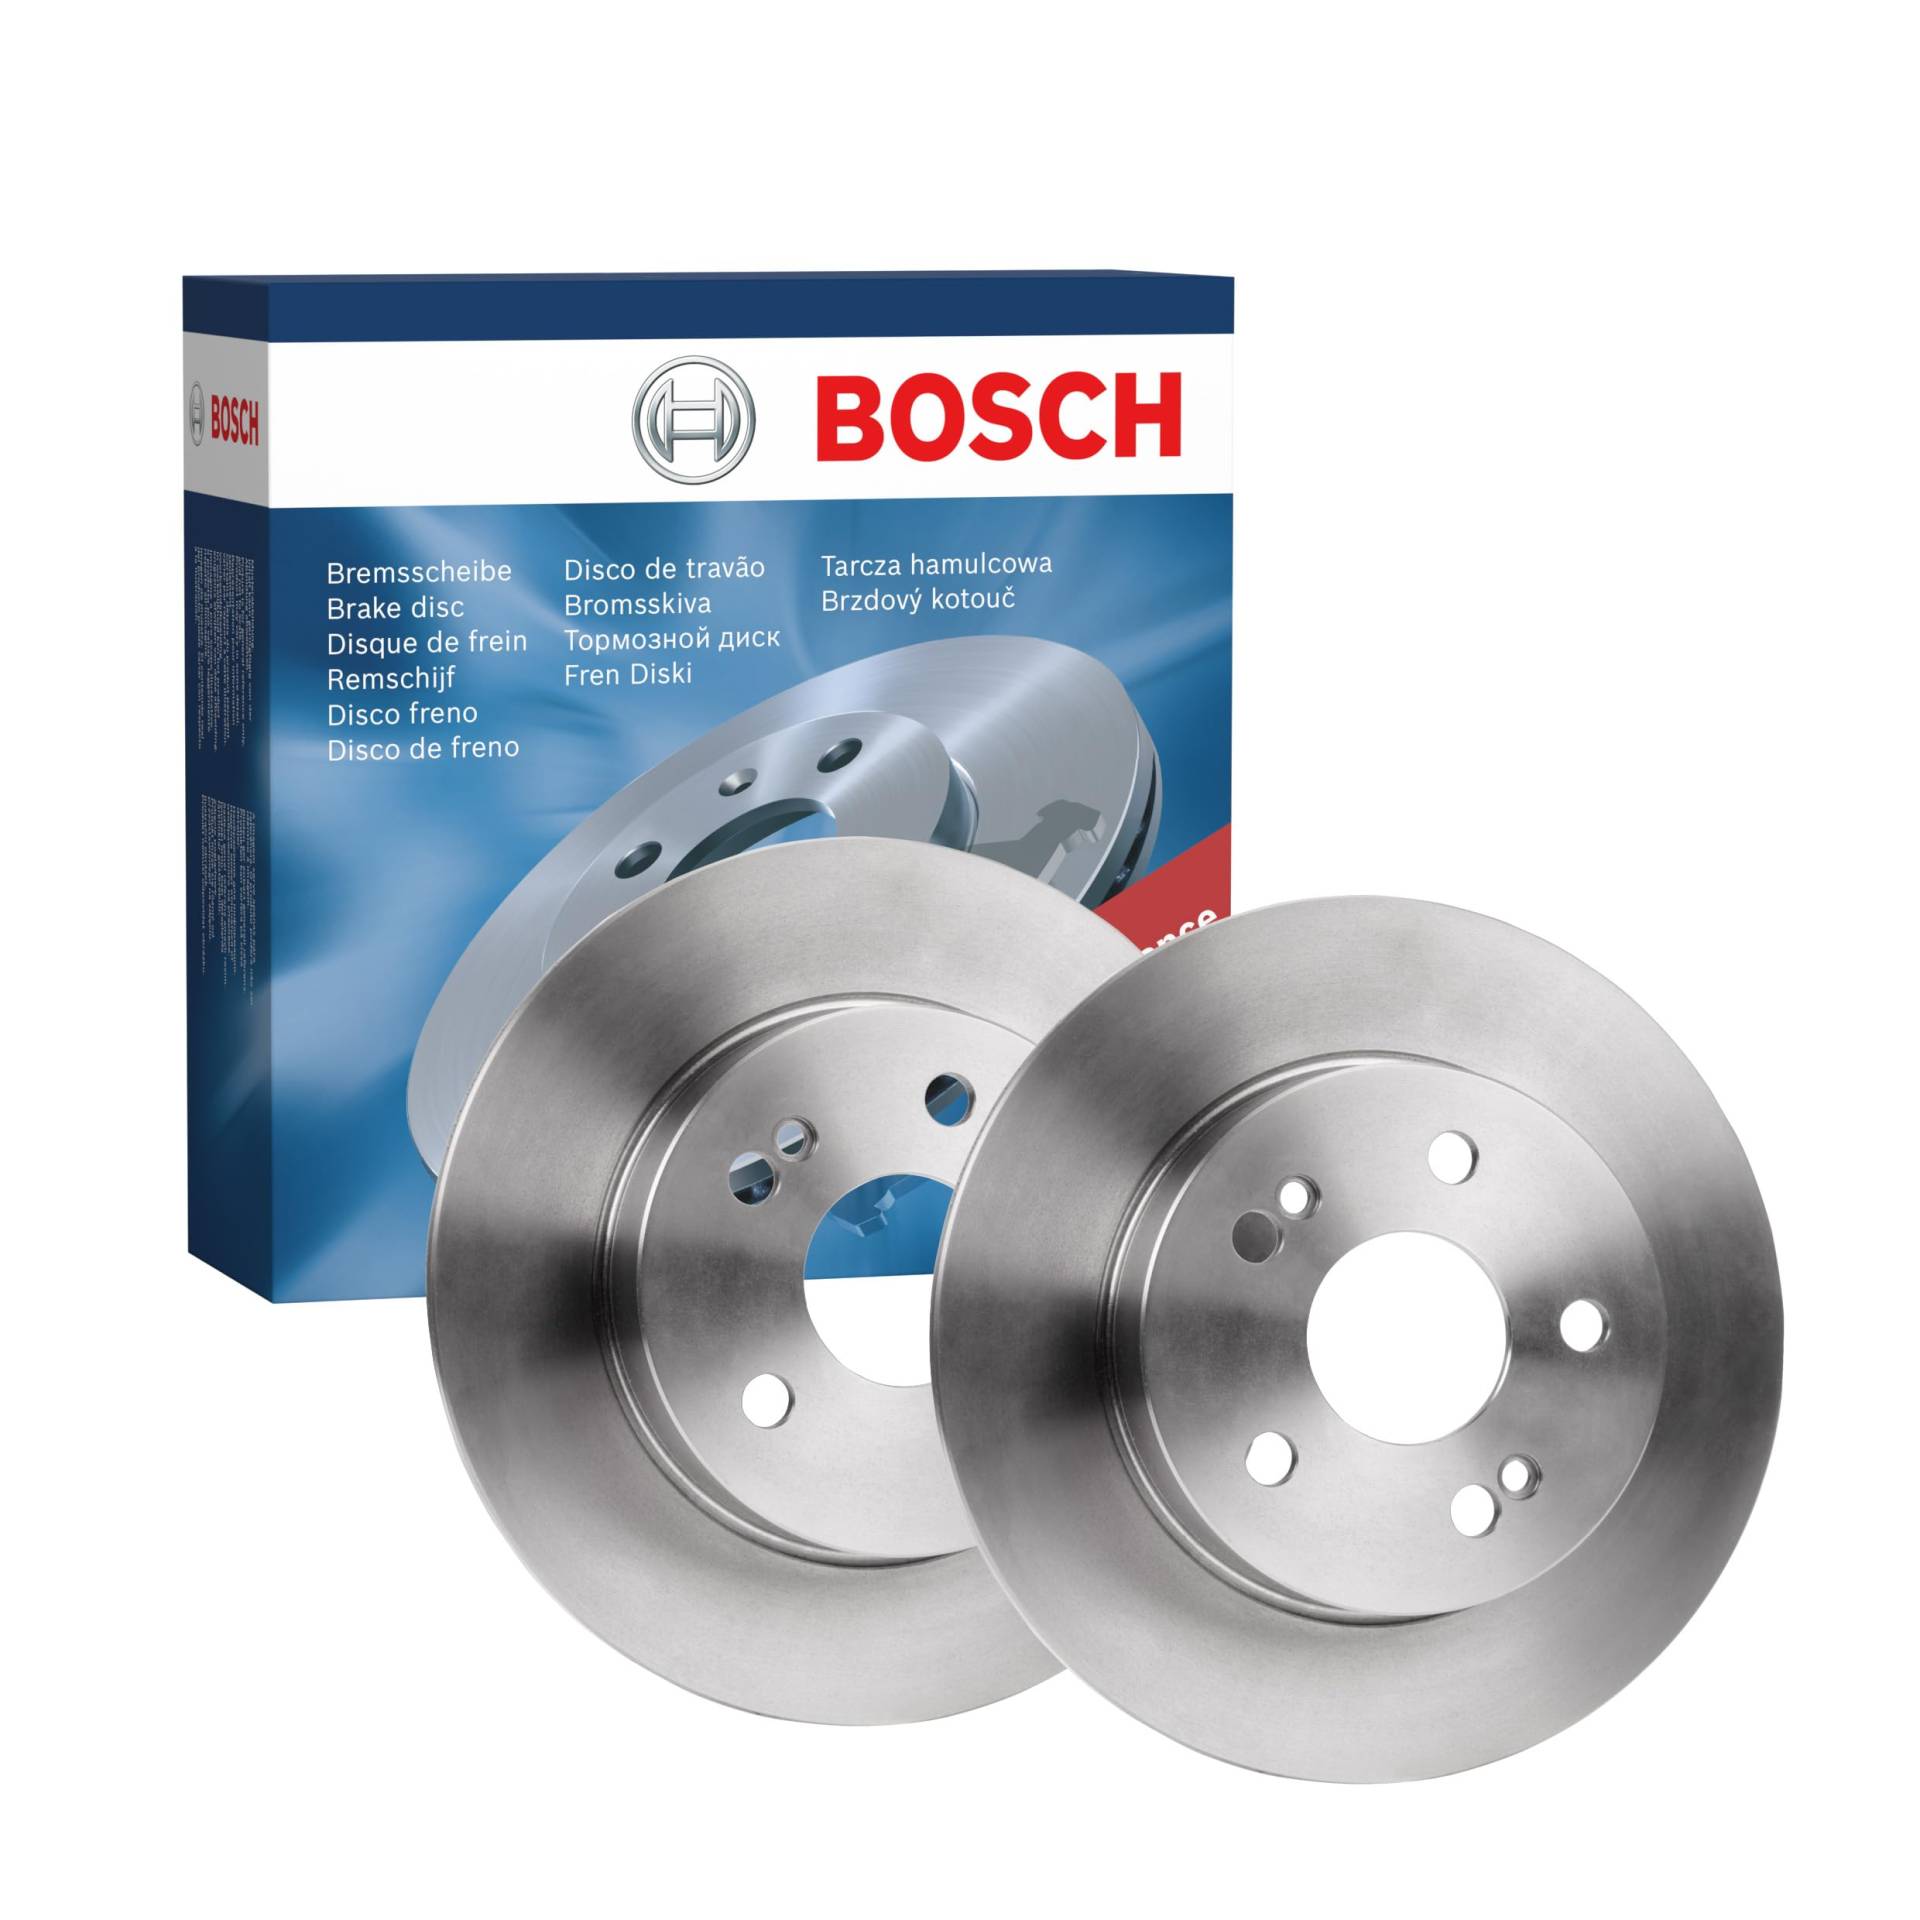 Bosch BD671 Bremsscheiben - Hinterachse - ECE-R90 Zertifizierung - zwei Bremsscheiben pro Set von Bosch Automotive